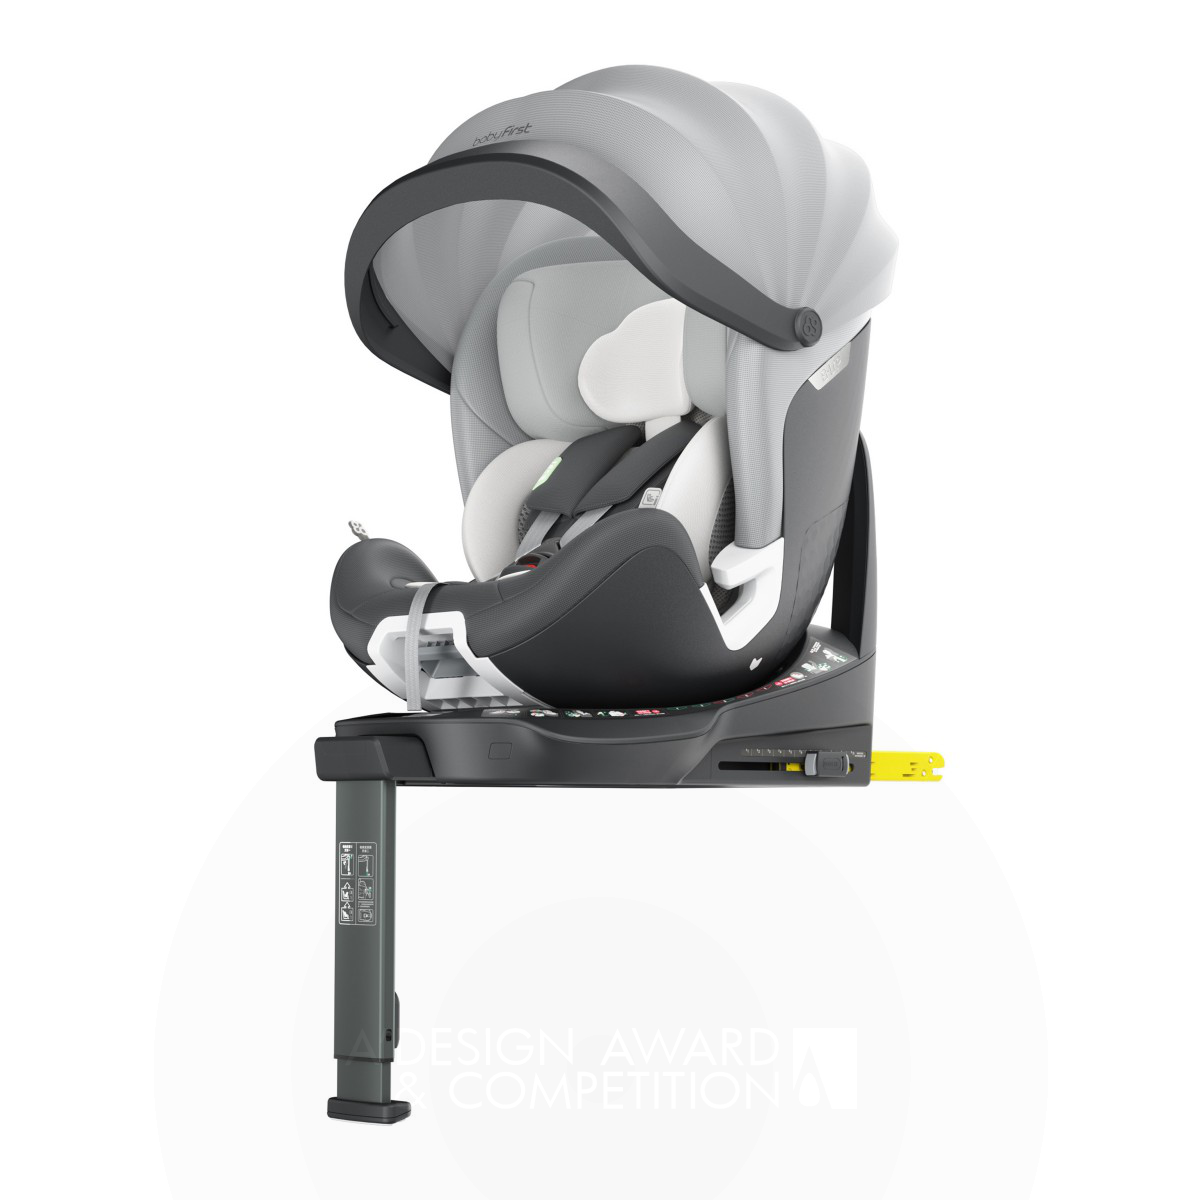 Babyfirst Joy Pro R155: A Cadeira de Segurança Inteligente para Crianças